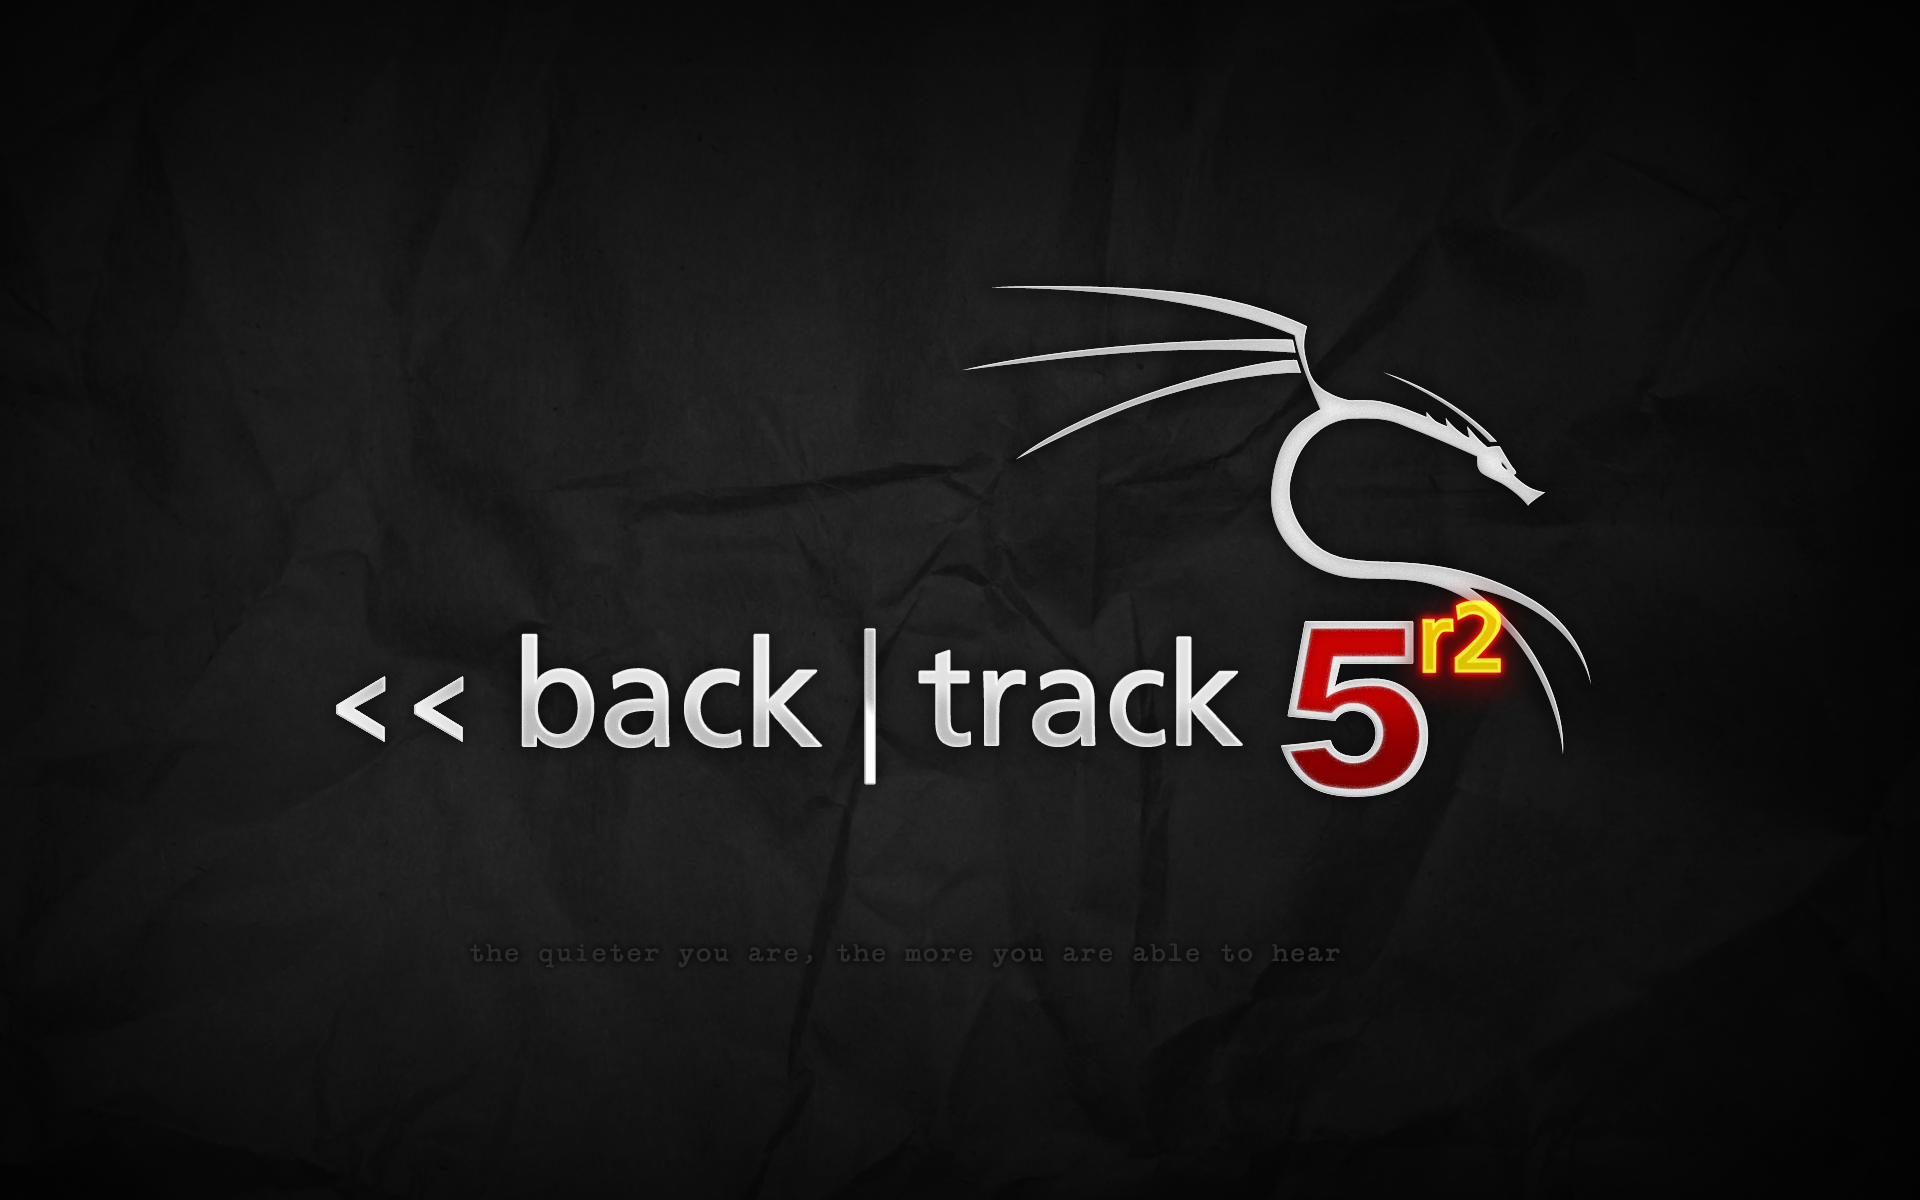 backtrack-5r2-grey.png